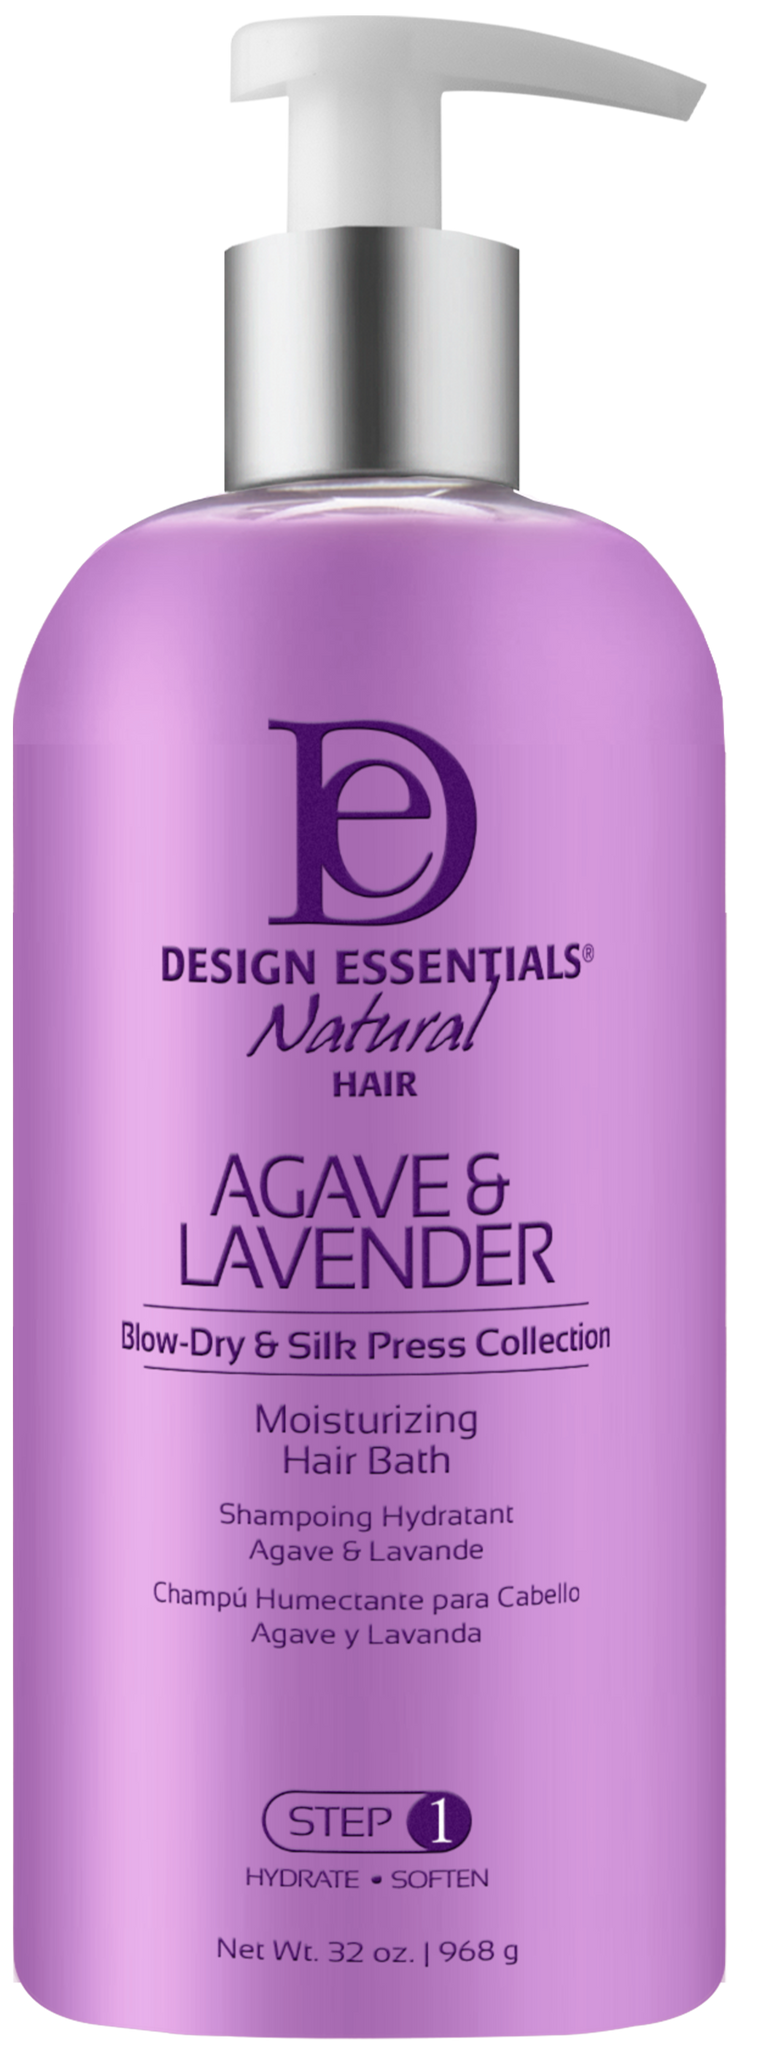 Agave & Lavender Moisturizing Hair Bath